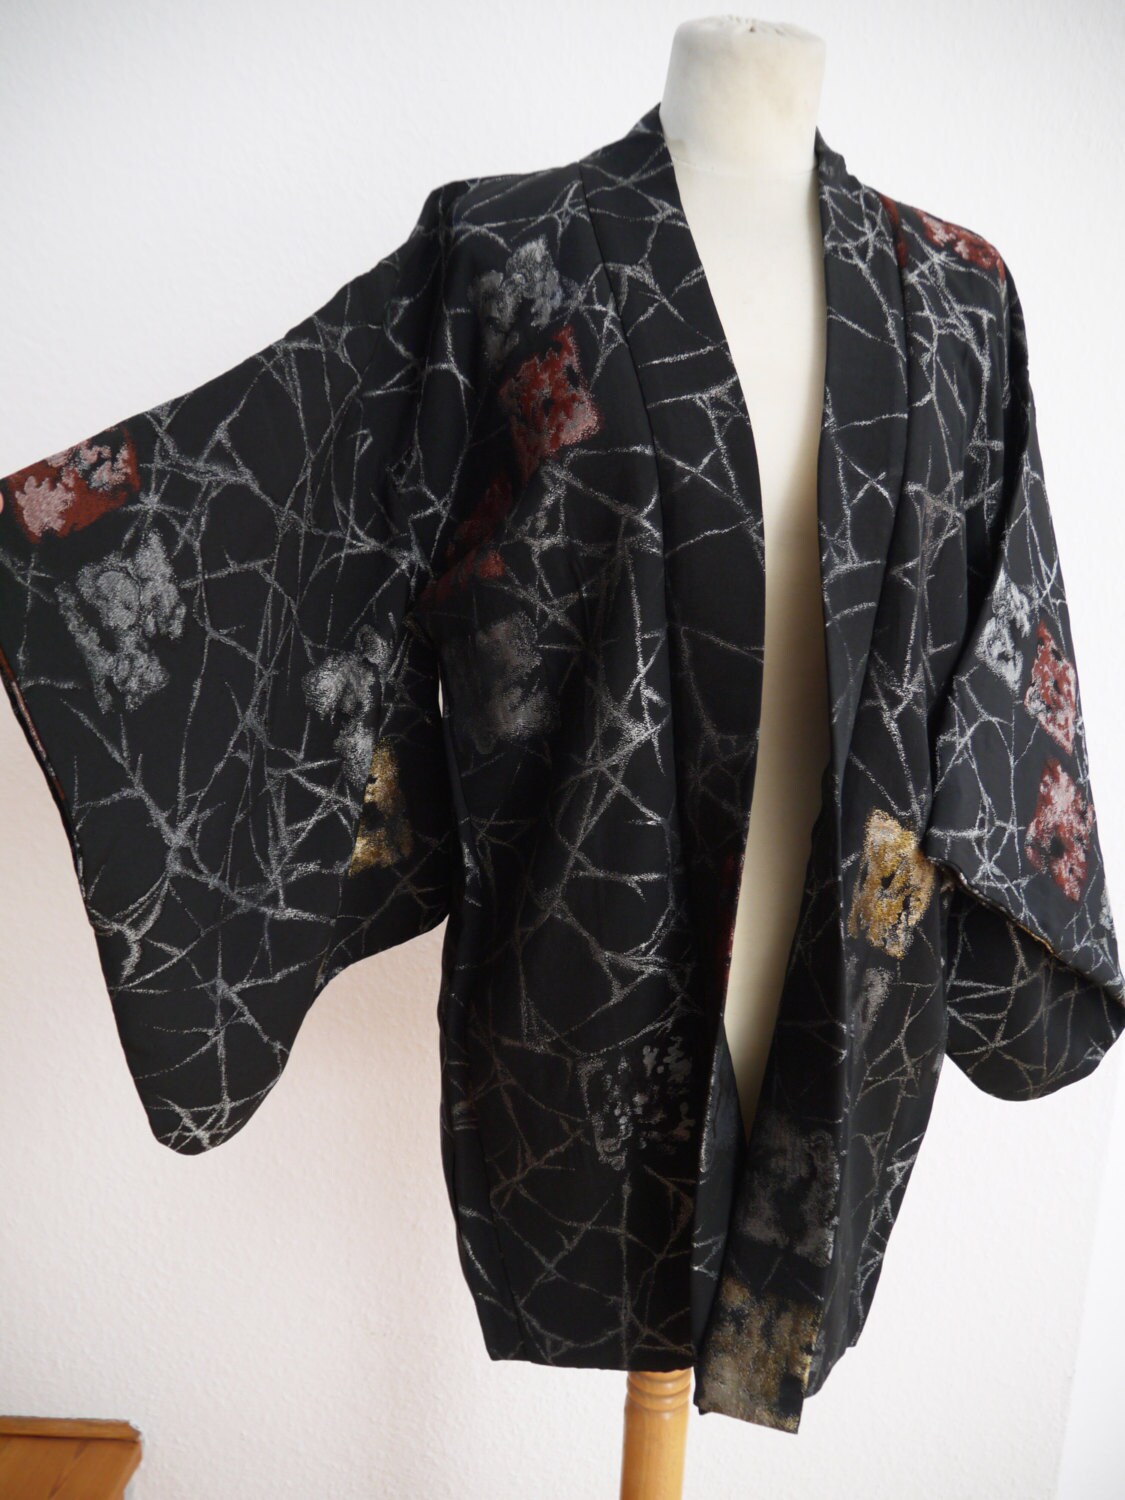 Black shiny KIMONO jacket / URUSHI (lacquer wear) silk/ luxury jacket ...